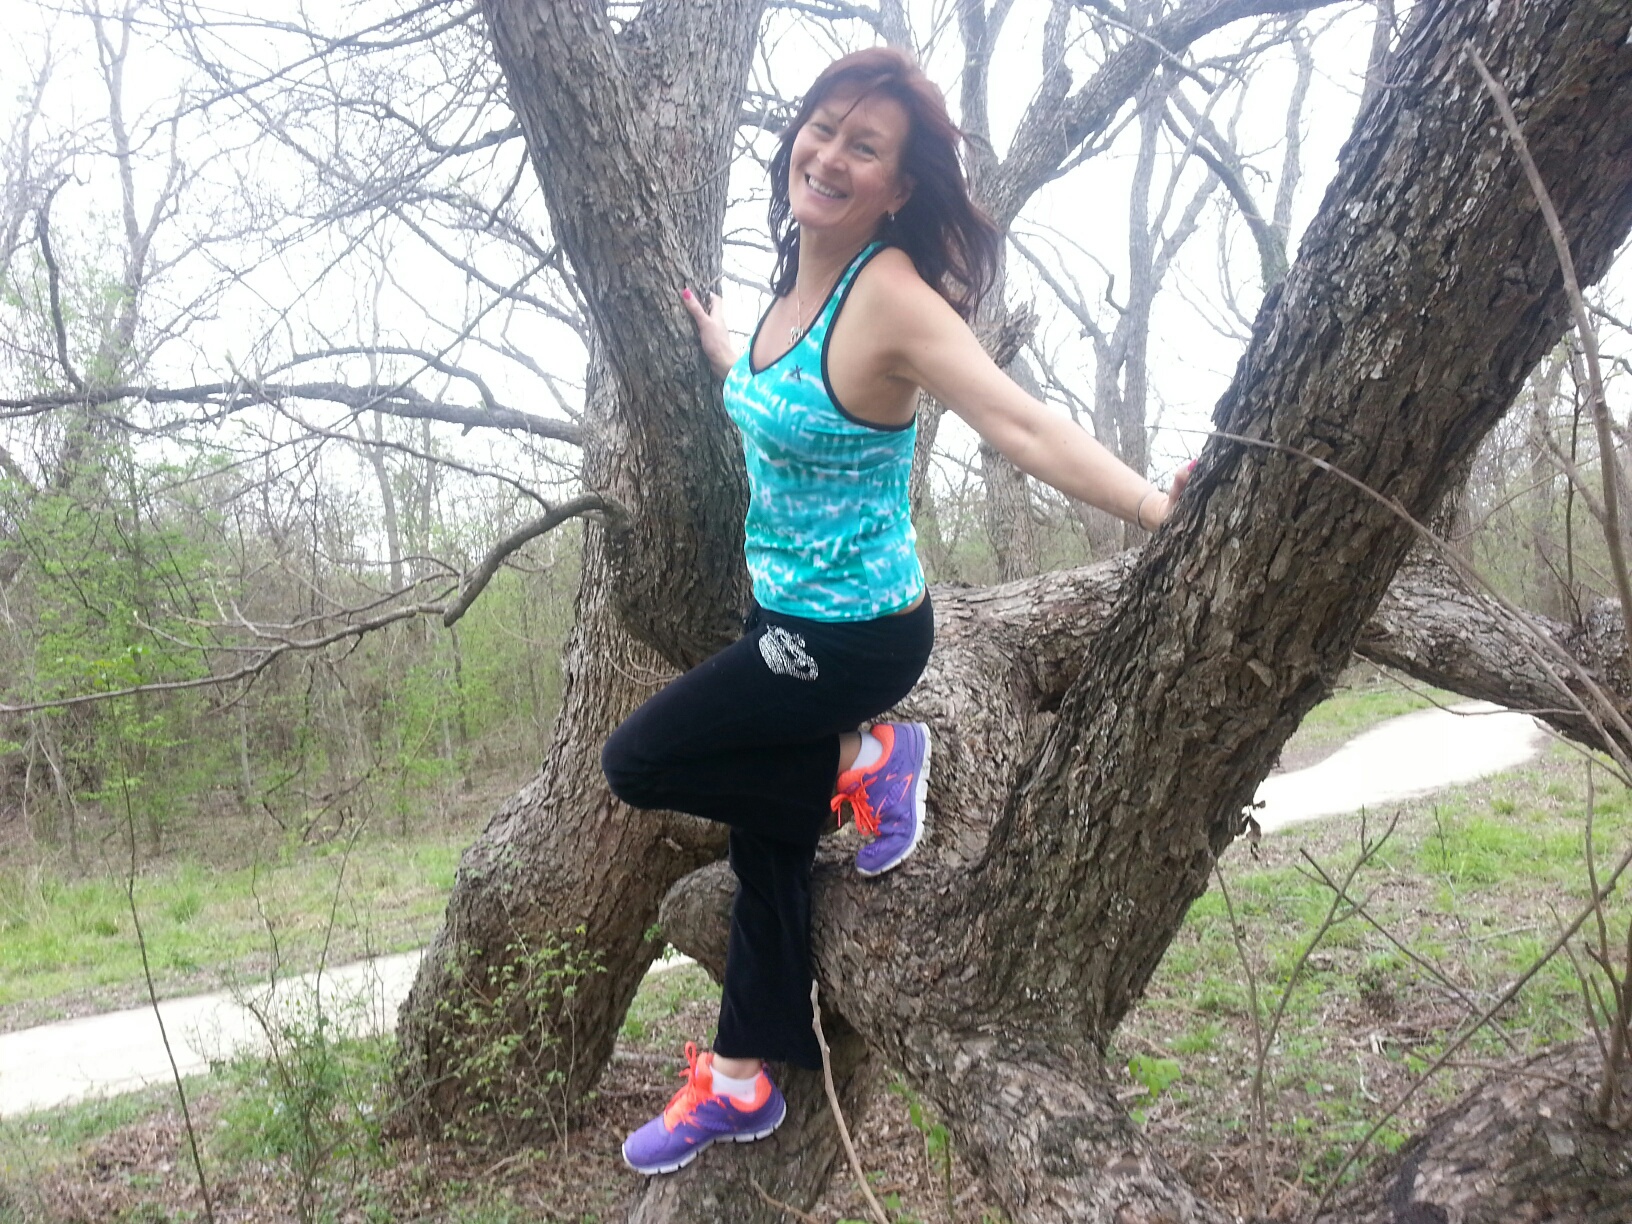 Me on the tree 07212014